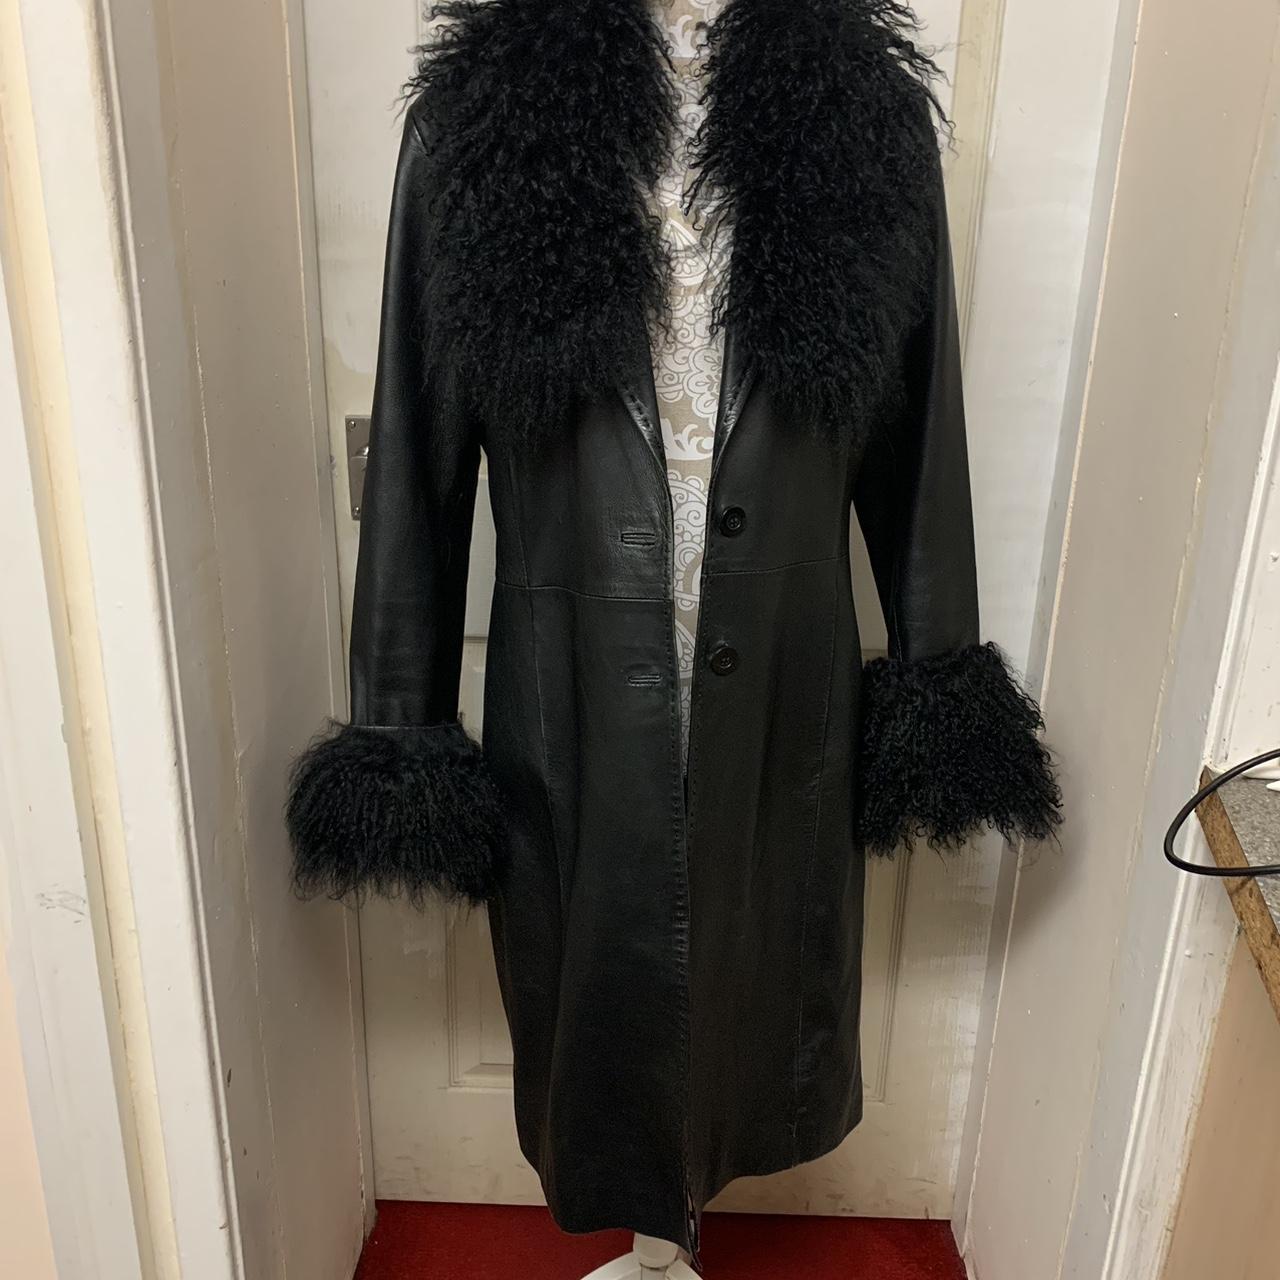 Black leather vintage 90s Y2K coat jacket from River... - Depop